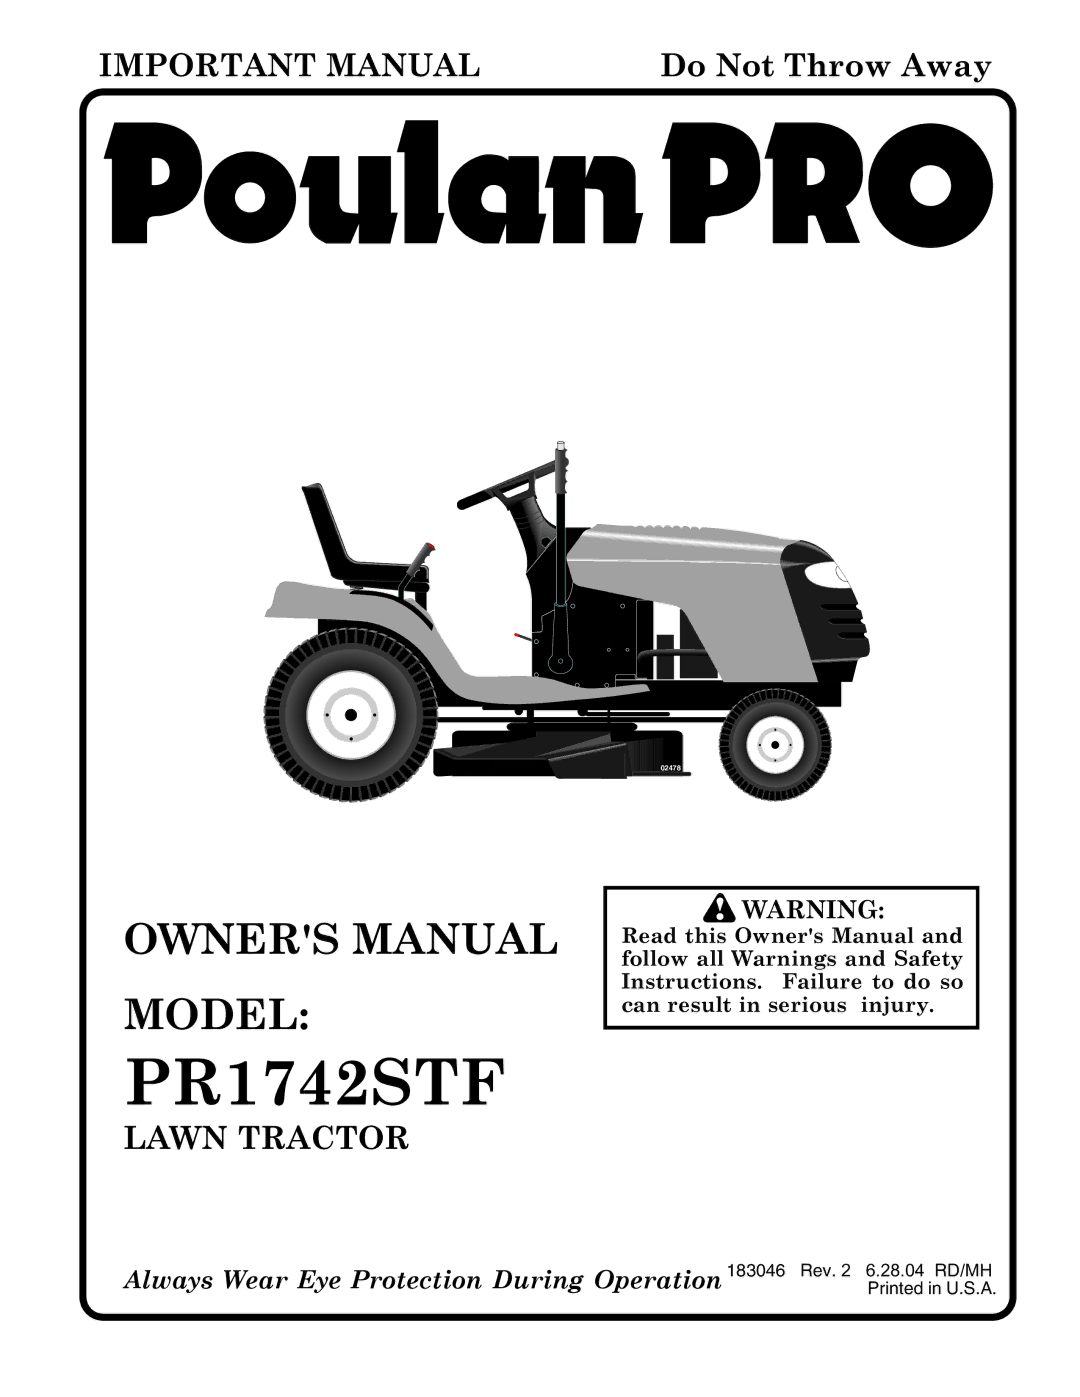 Poulan 183046 owner manual PR1742STF 